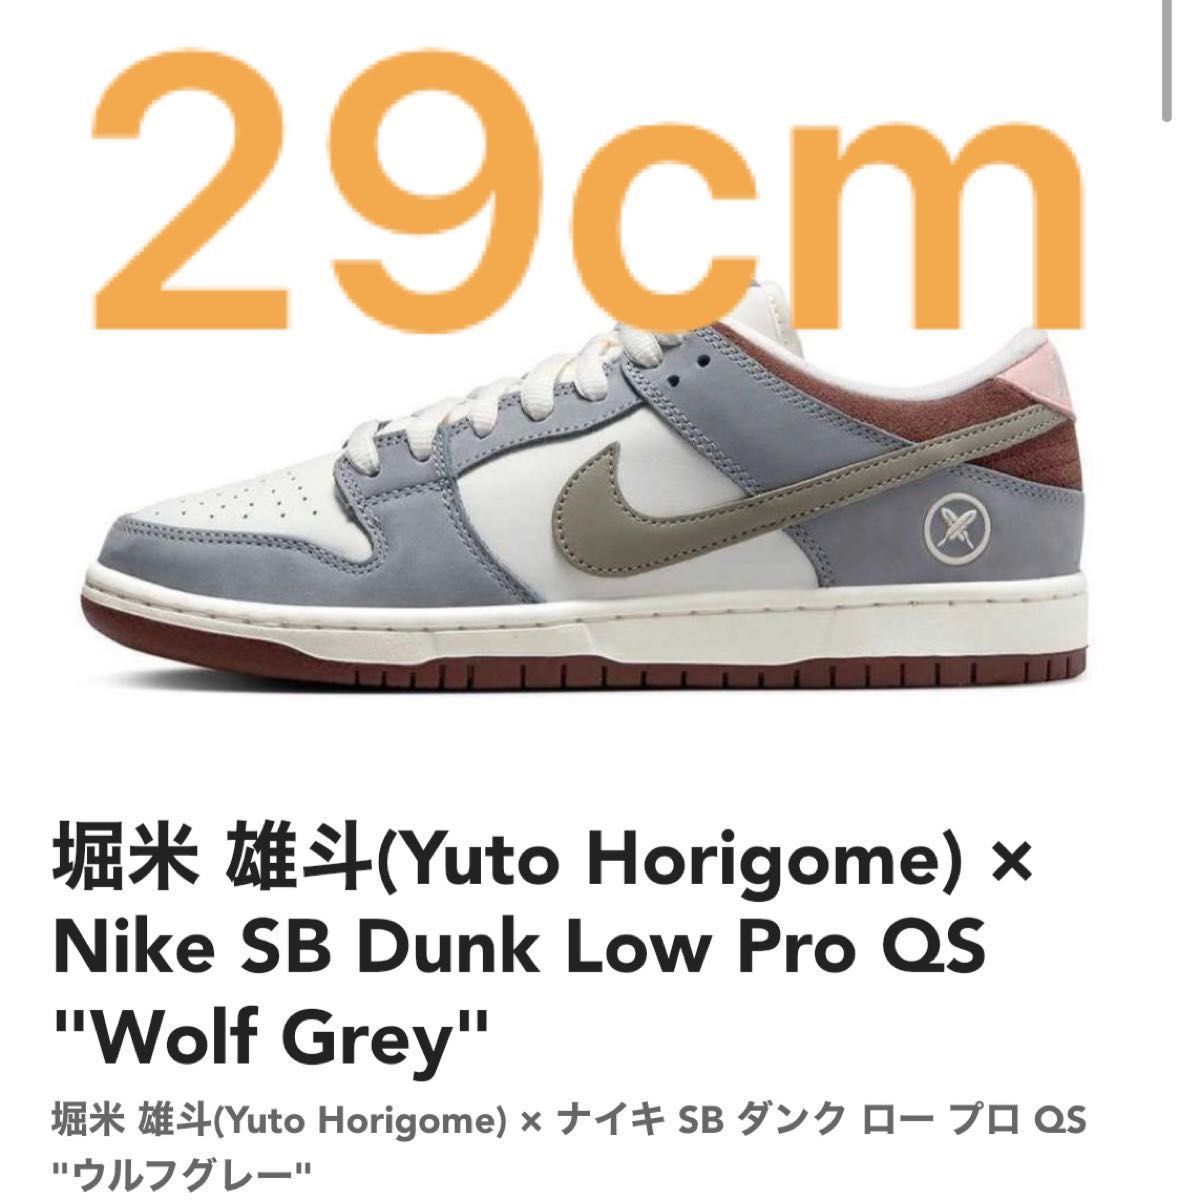 堀米 雄斗(Yuto Horigome) × Nike SB Dunk Low Pro QS Wolf Grey us11